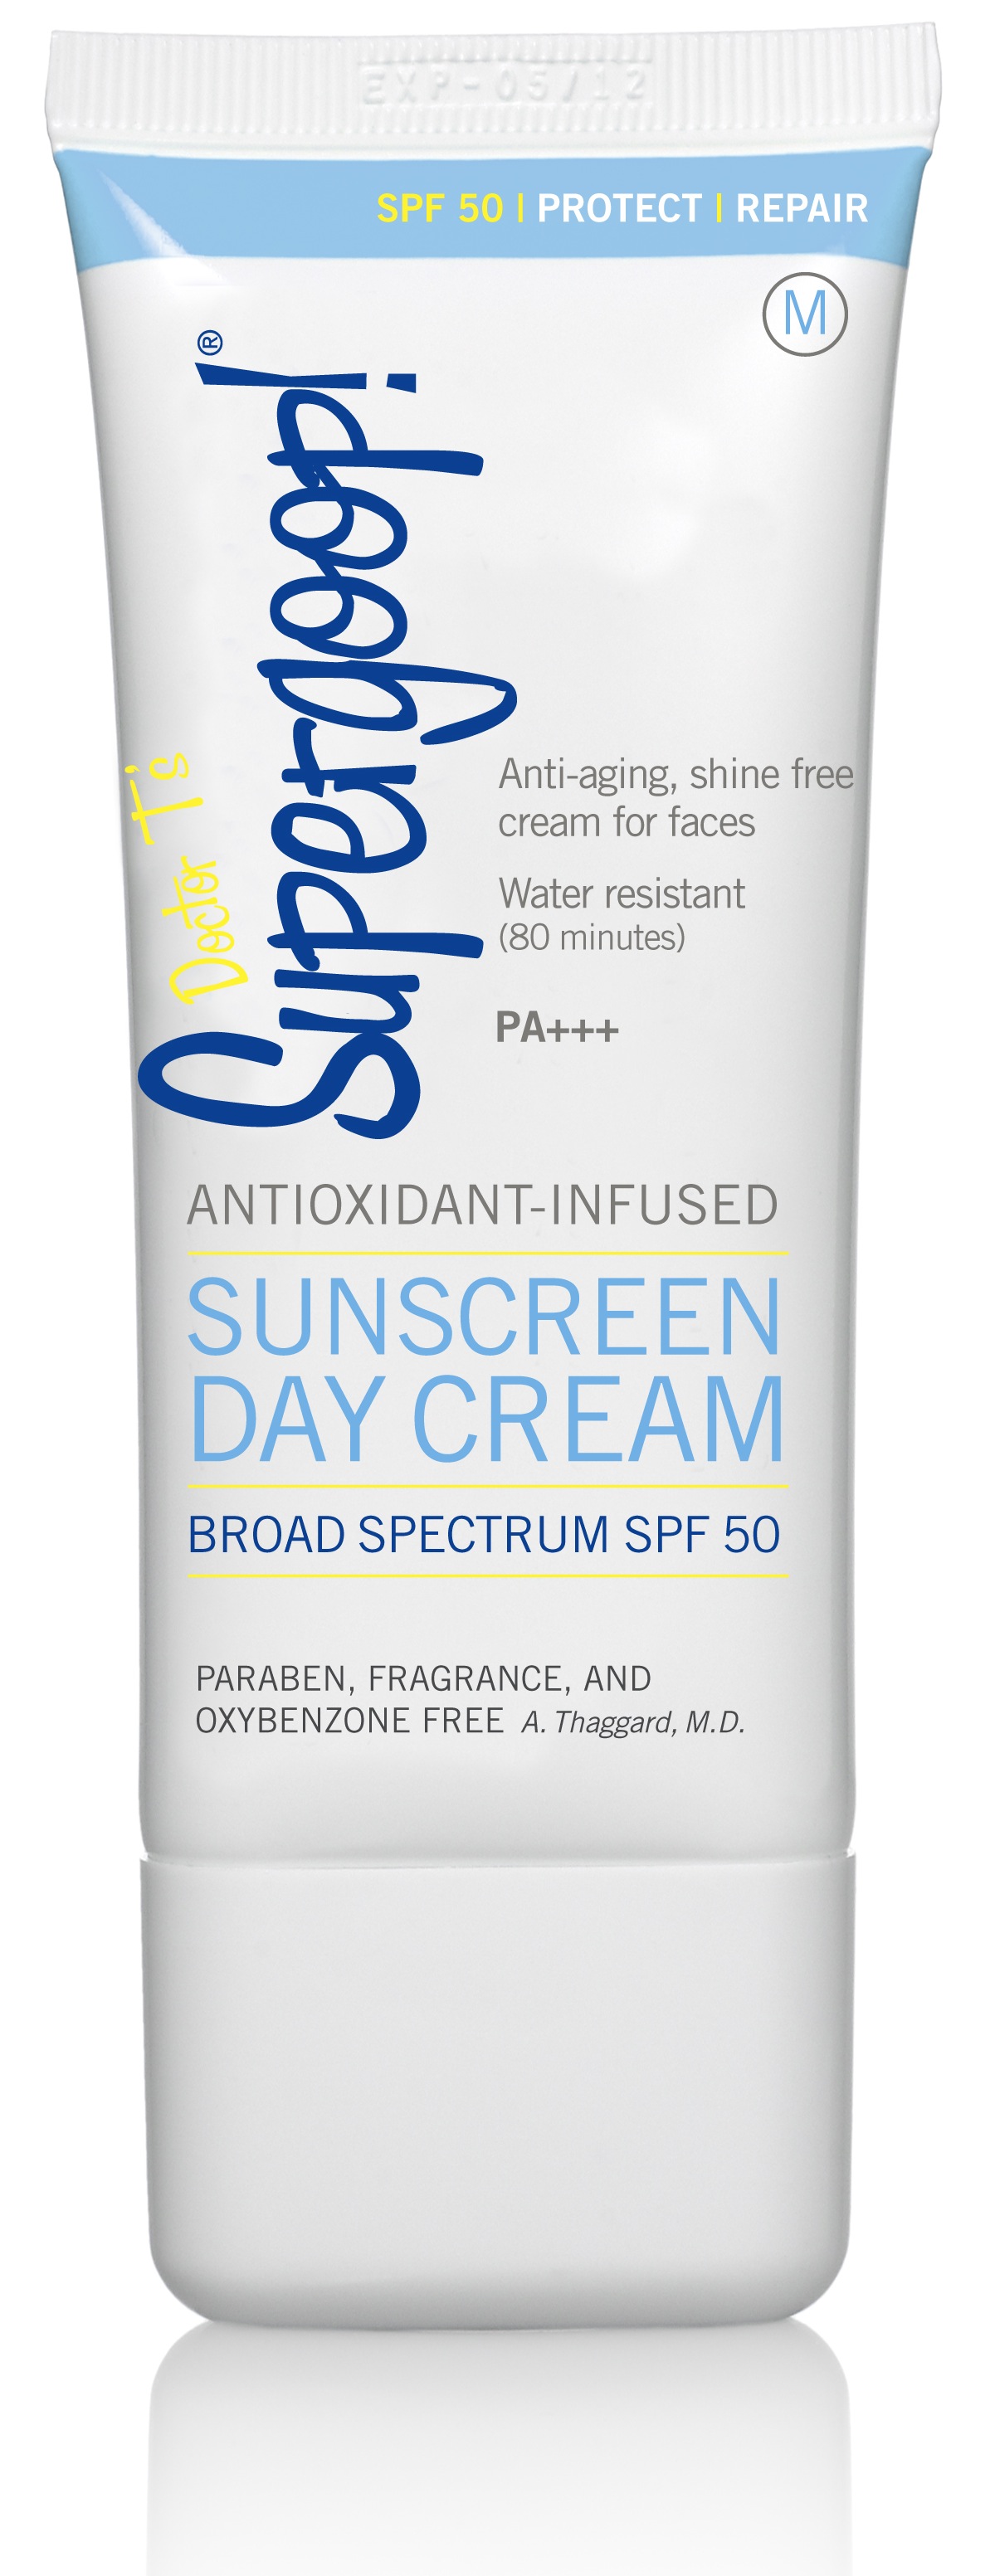 SPF 50 Day Cream